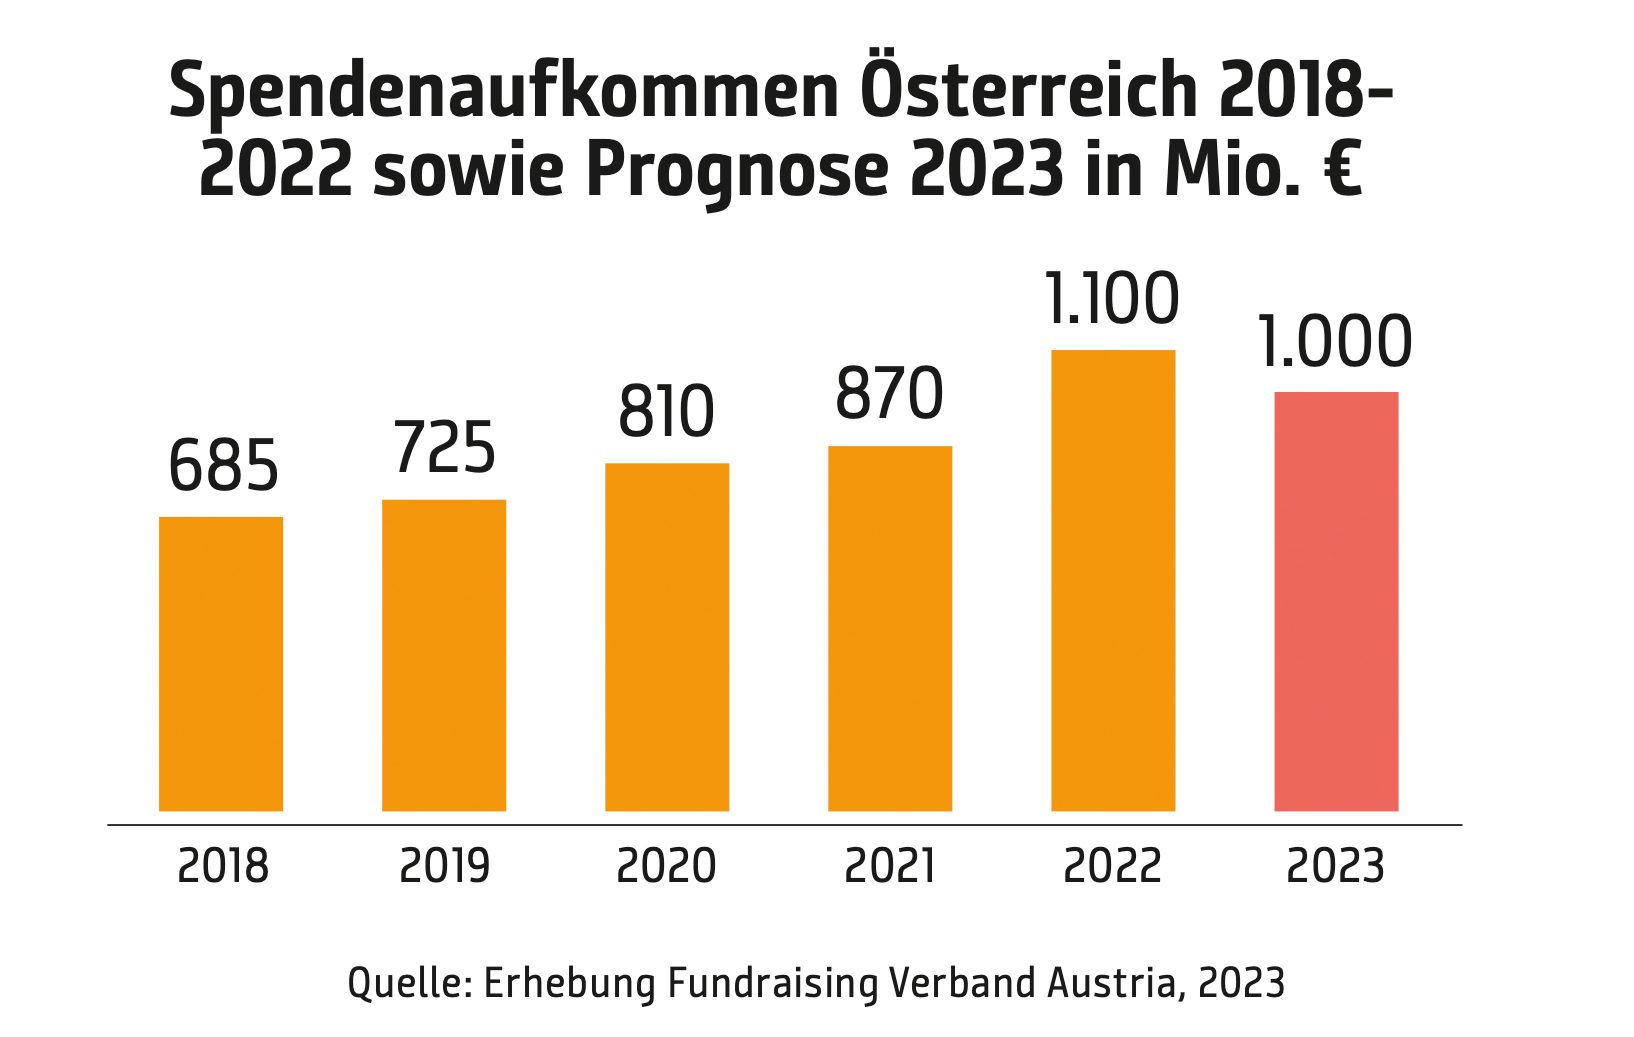 Spendenbericht 2023: Großzügigkeit Österreichs auf neuem Höchststand